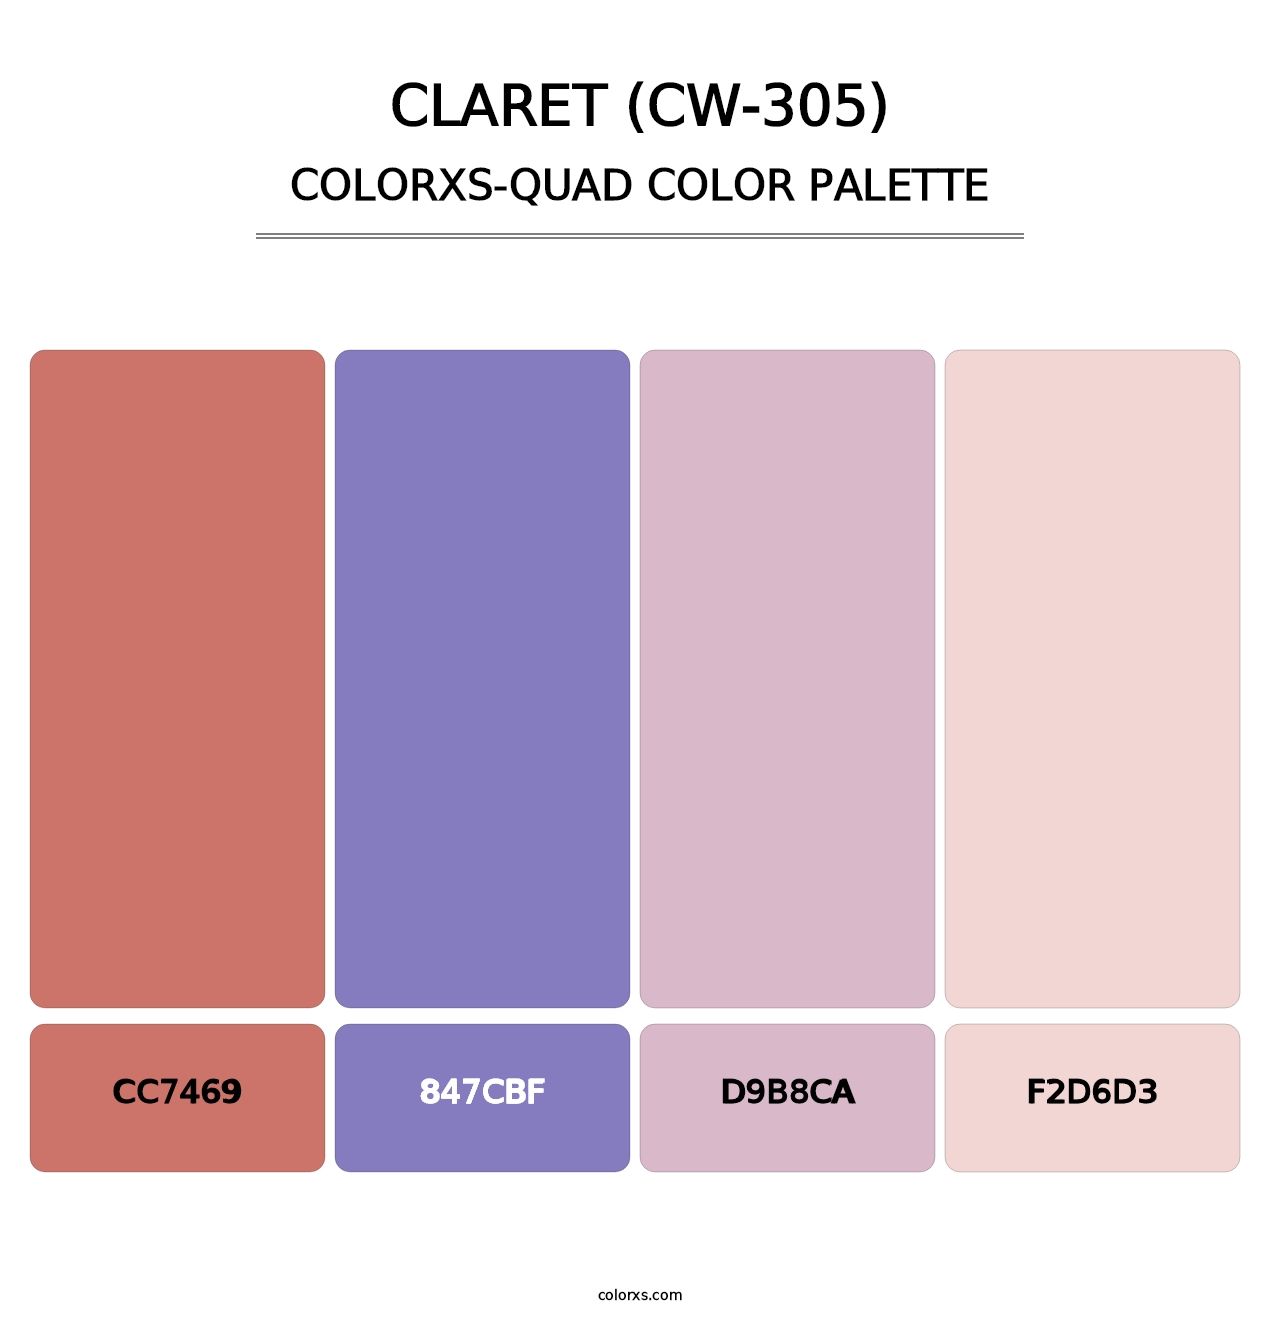 Claret (CW-305) - Colorxs Quad Palette